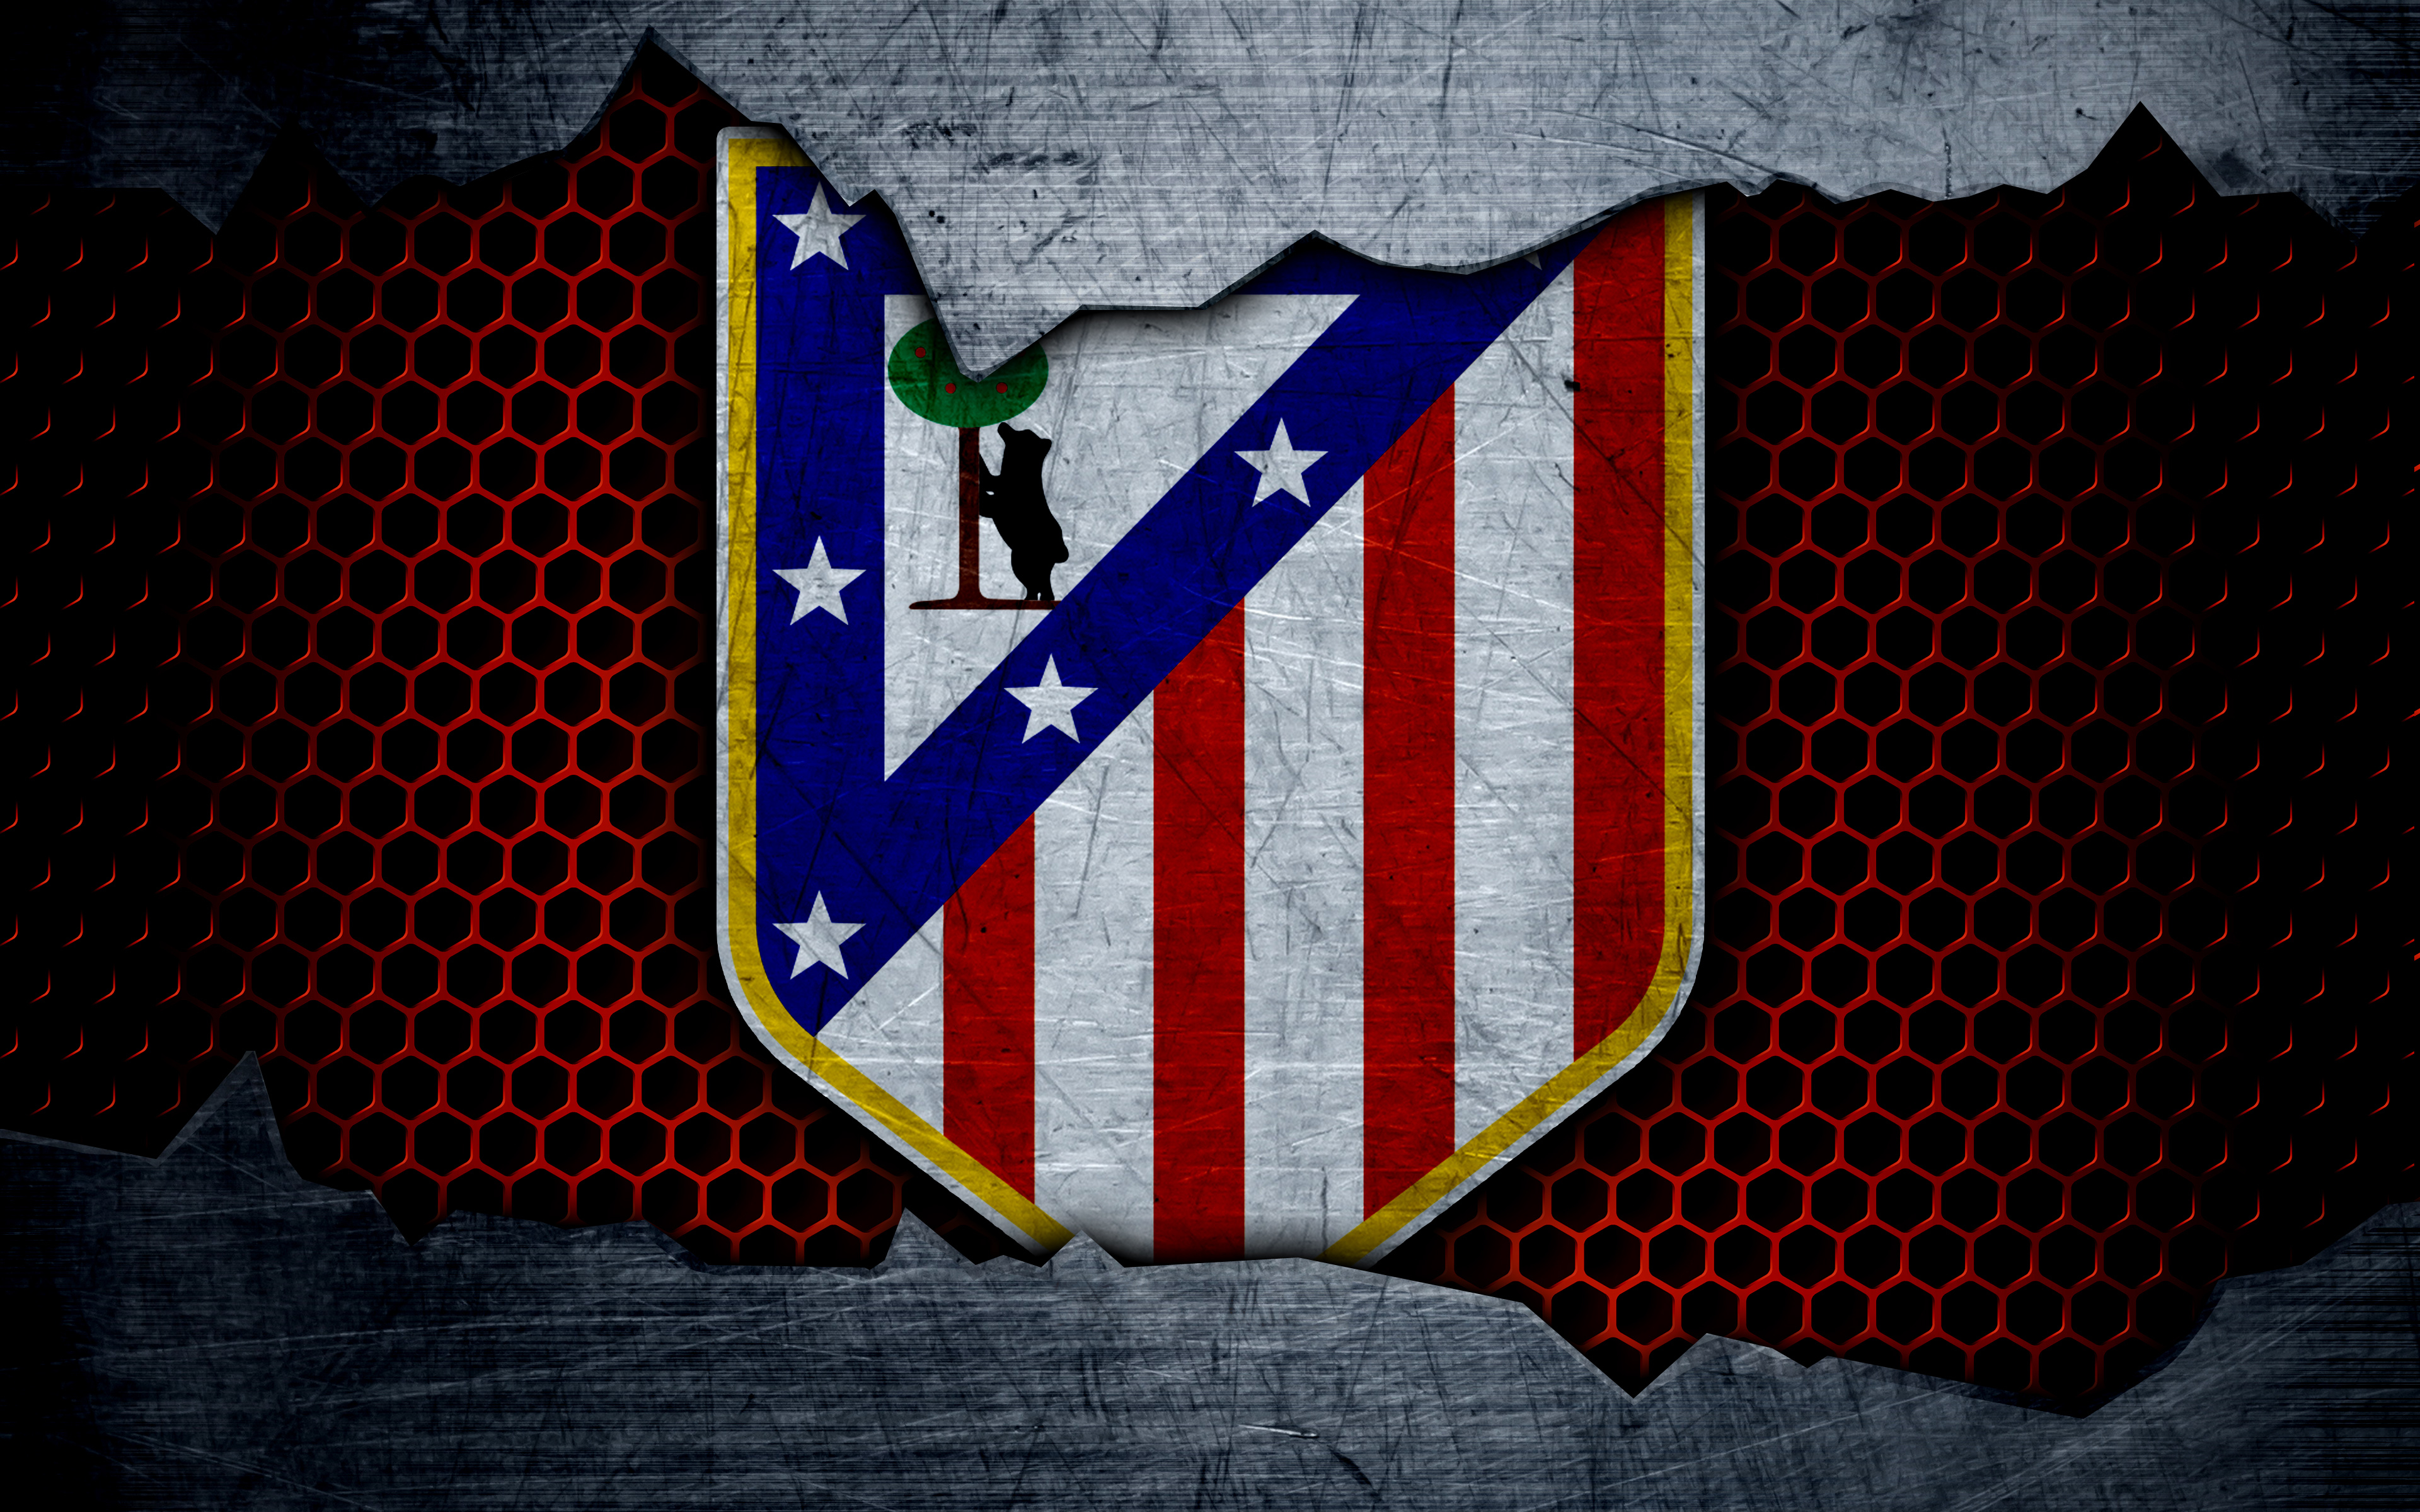 Free download wallpaper Sports, Logo, Emblem, Soccer, Atlético Madrid on your PC desktop